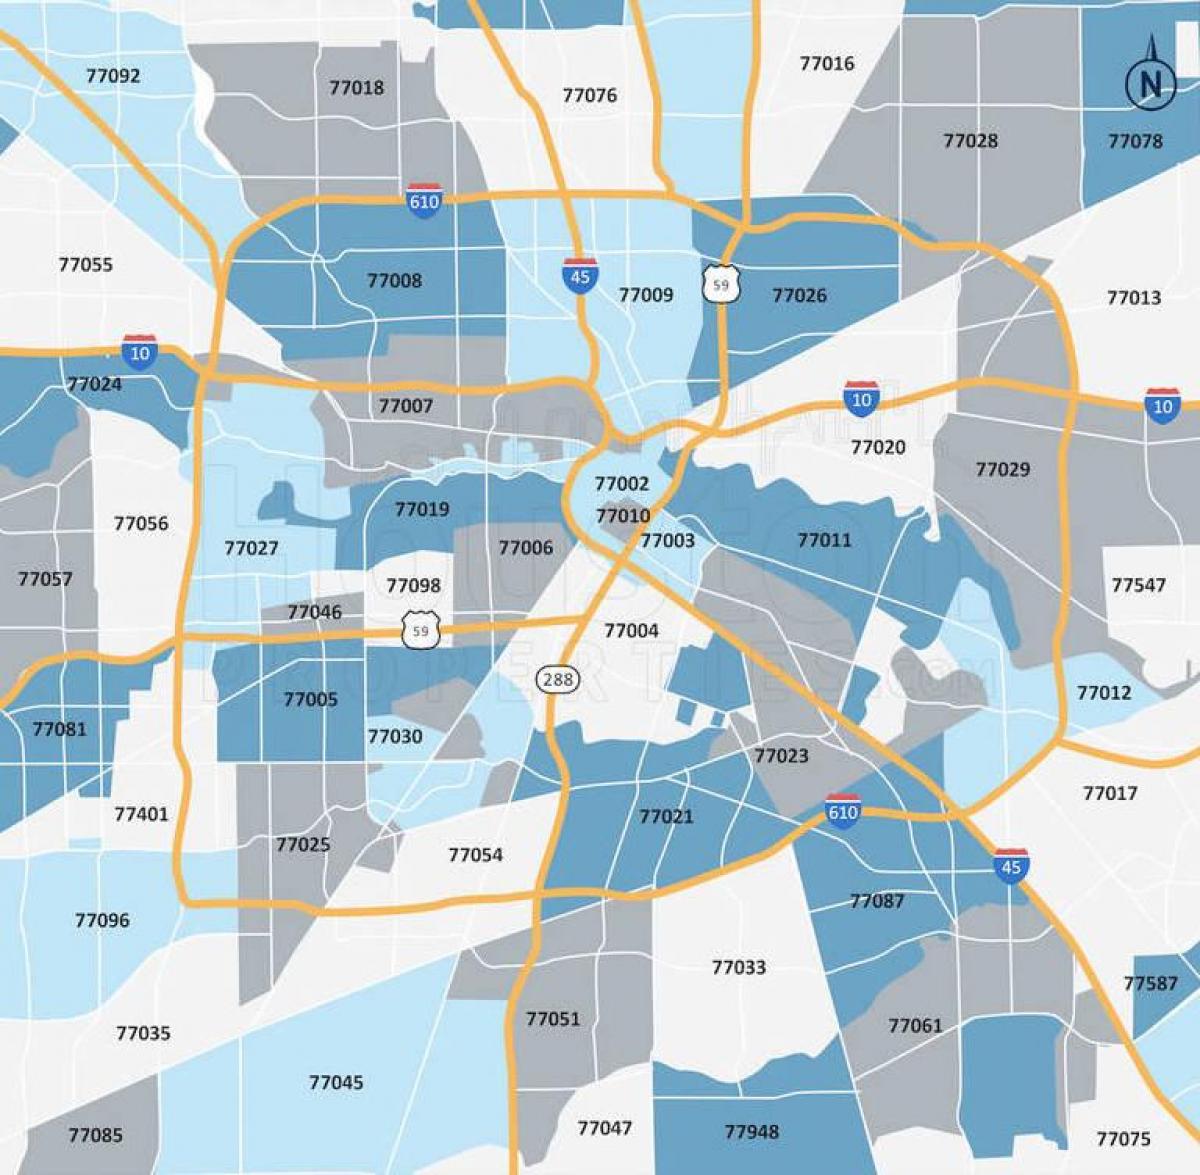 Mappa dei codici postali di Houston